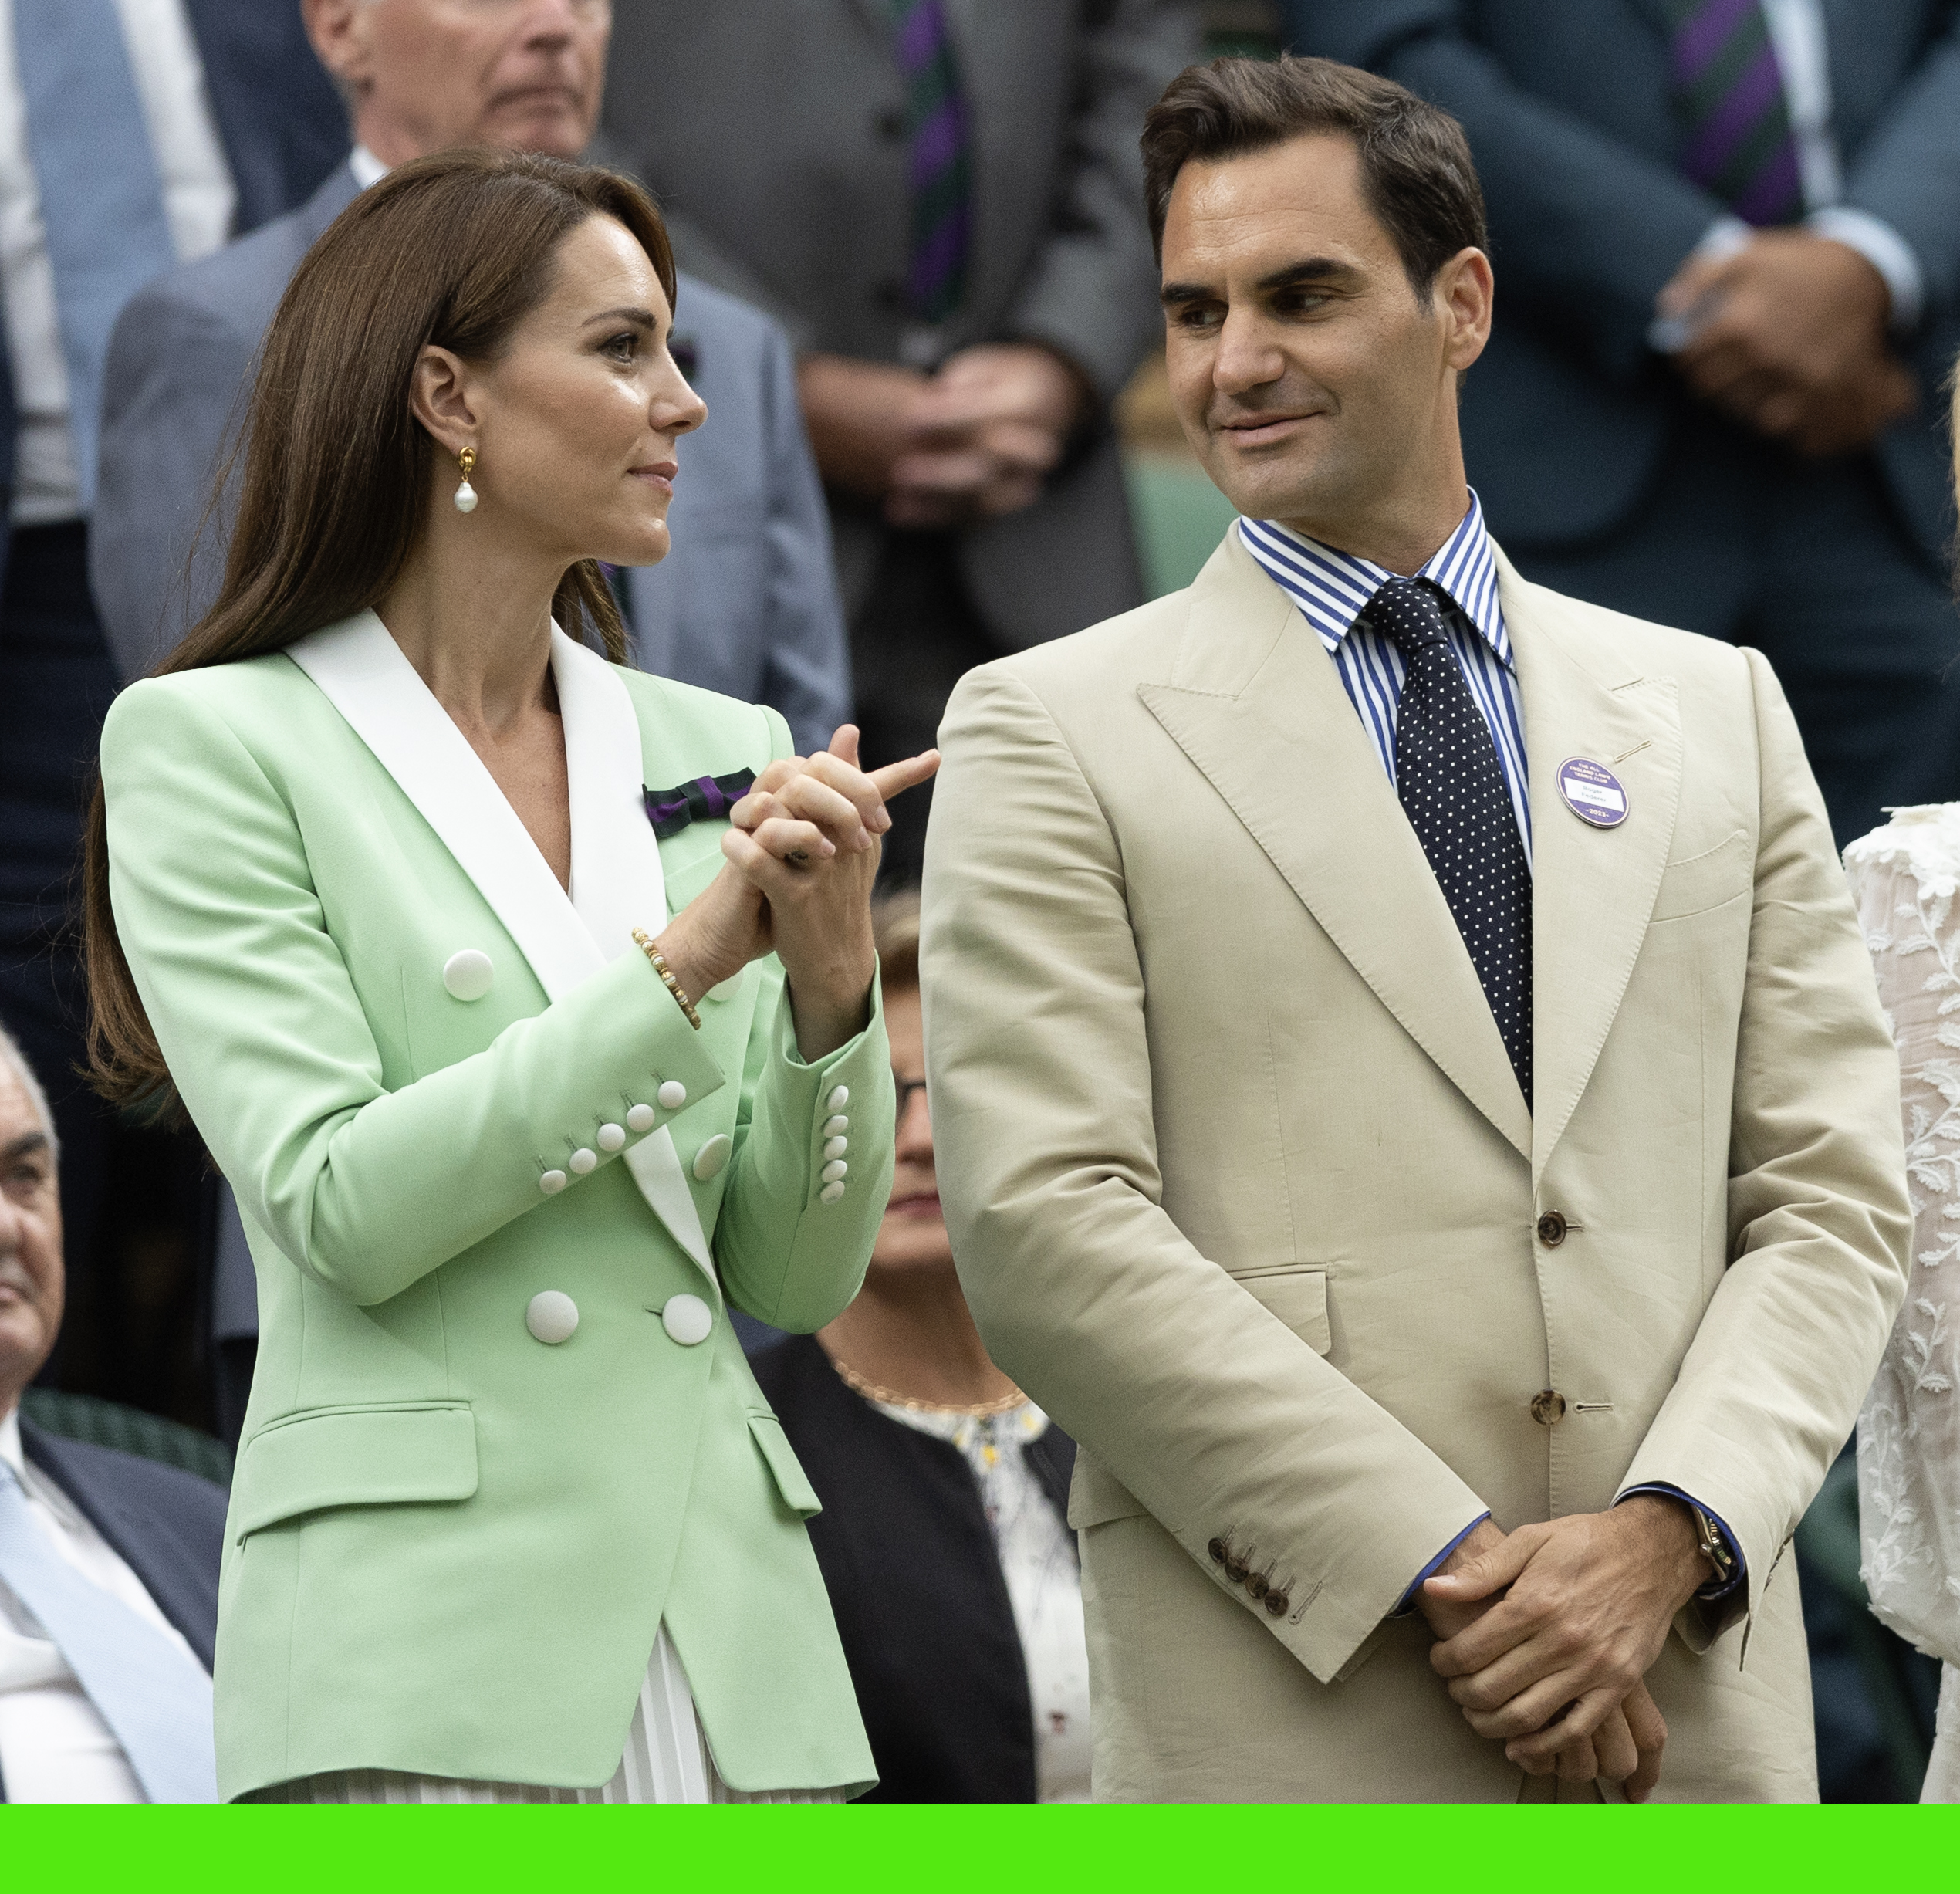 Ich konnte die Spannung zwischen Roger Federer und Kate spüren, als sie sich in der Royal Box von Wimbledon gegenseitig anstrahlten